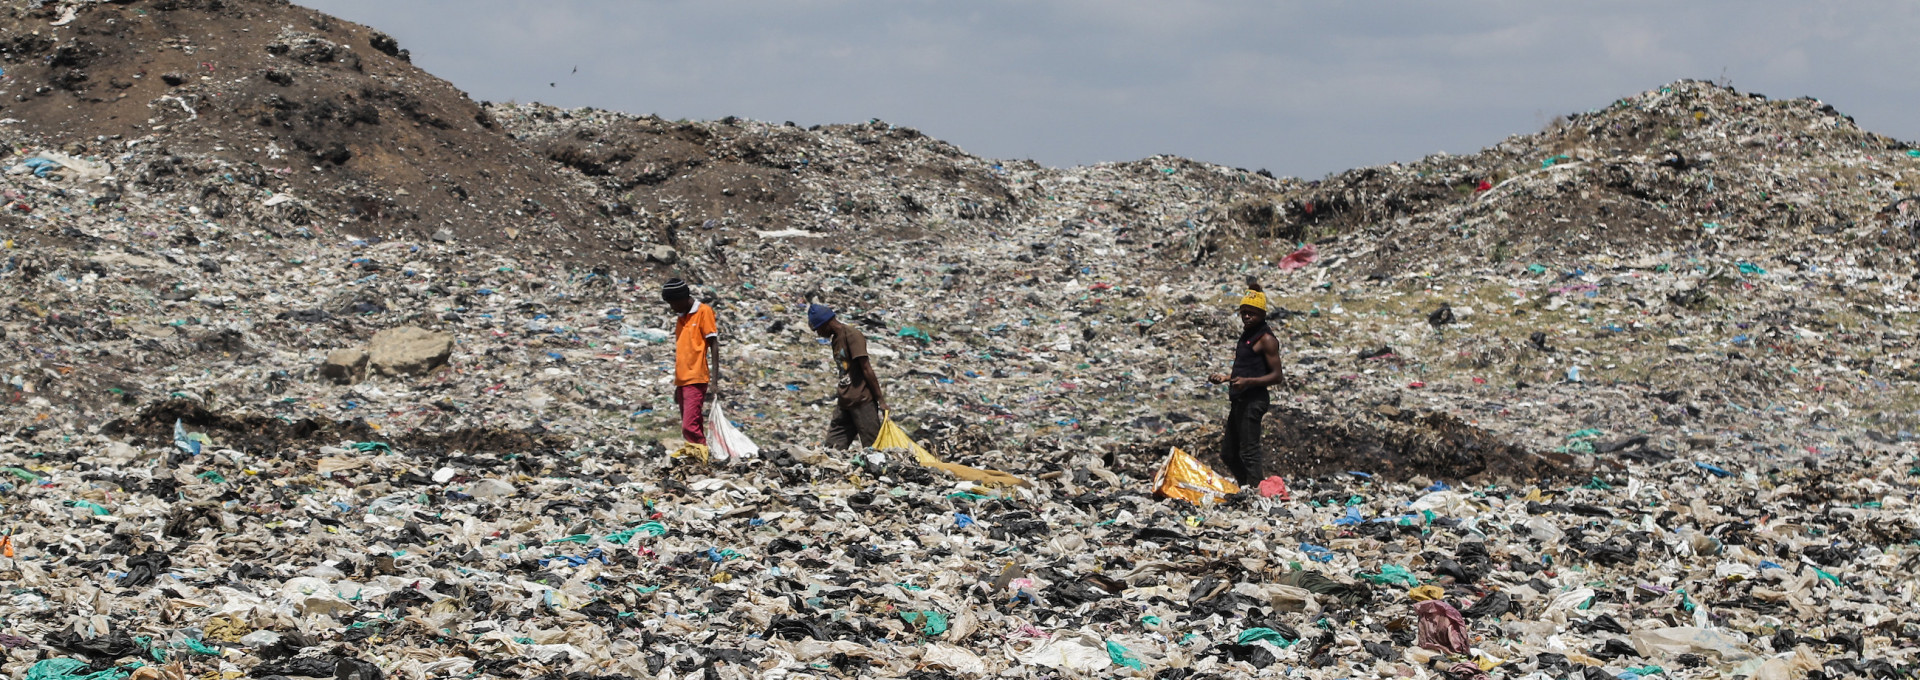 Drei Personen laufen über eine riesige Müllhalde mit Plastik und anderem Müll